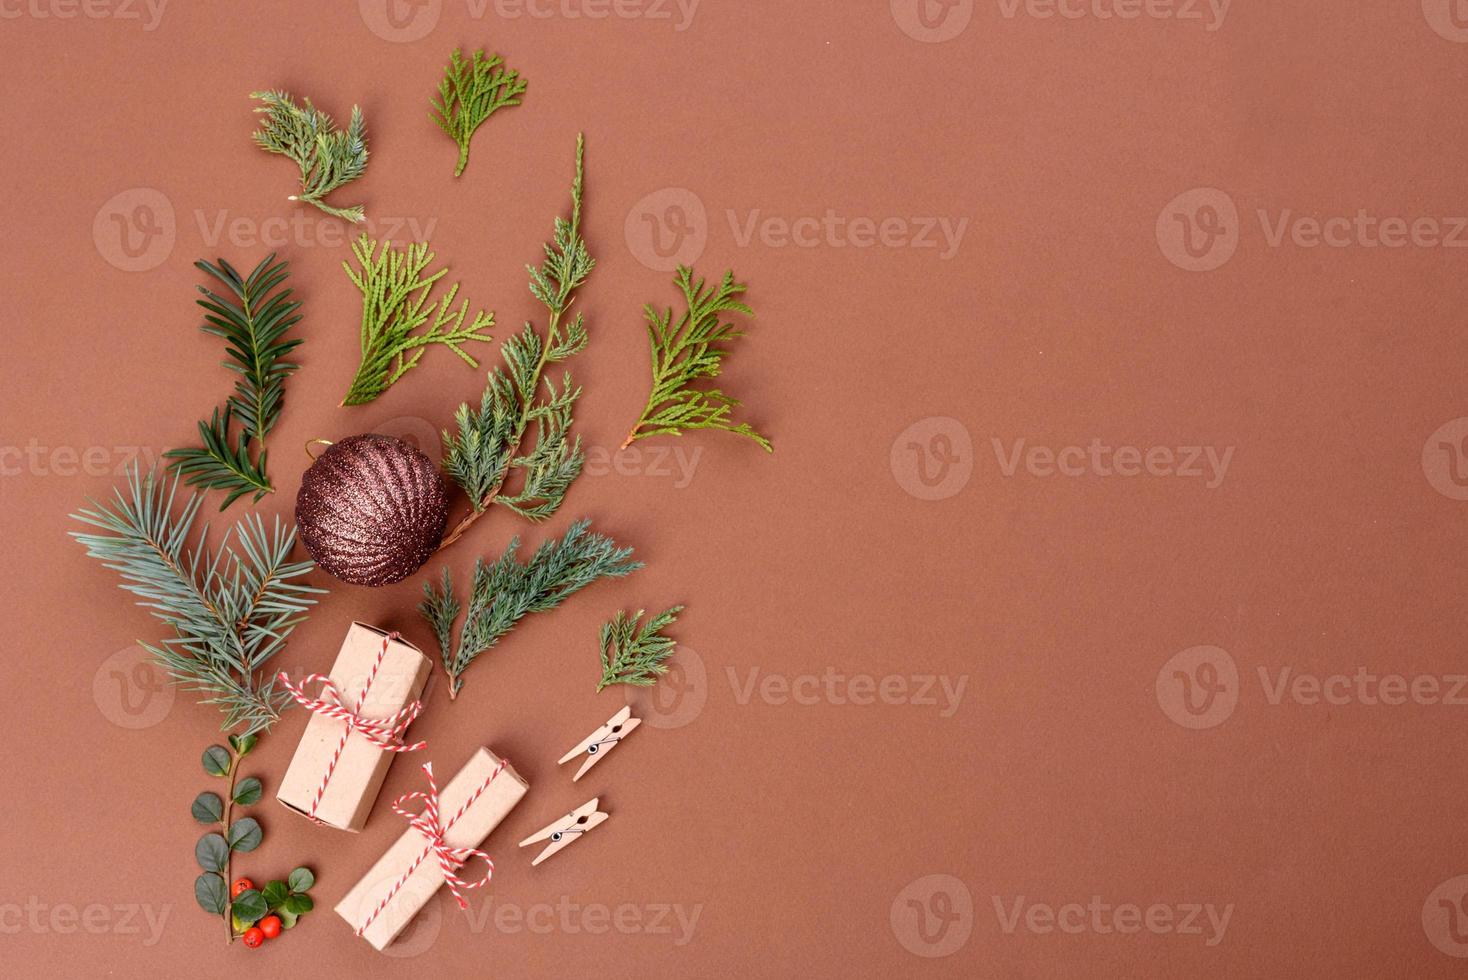 Weihnachten heller farbiger dekorativer Hintergrund foto